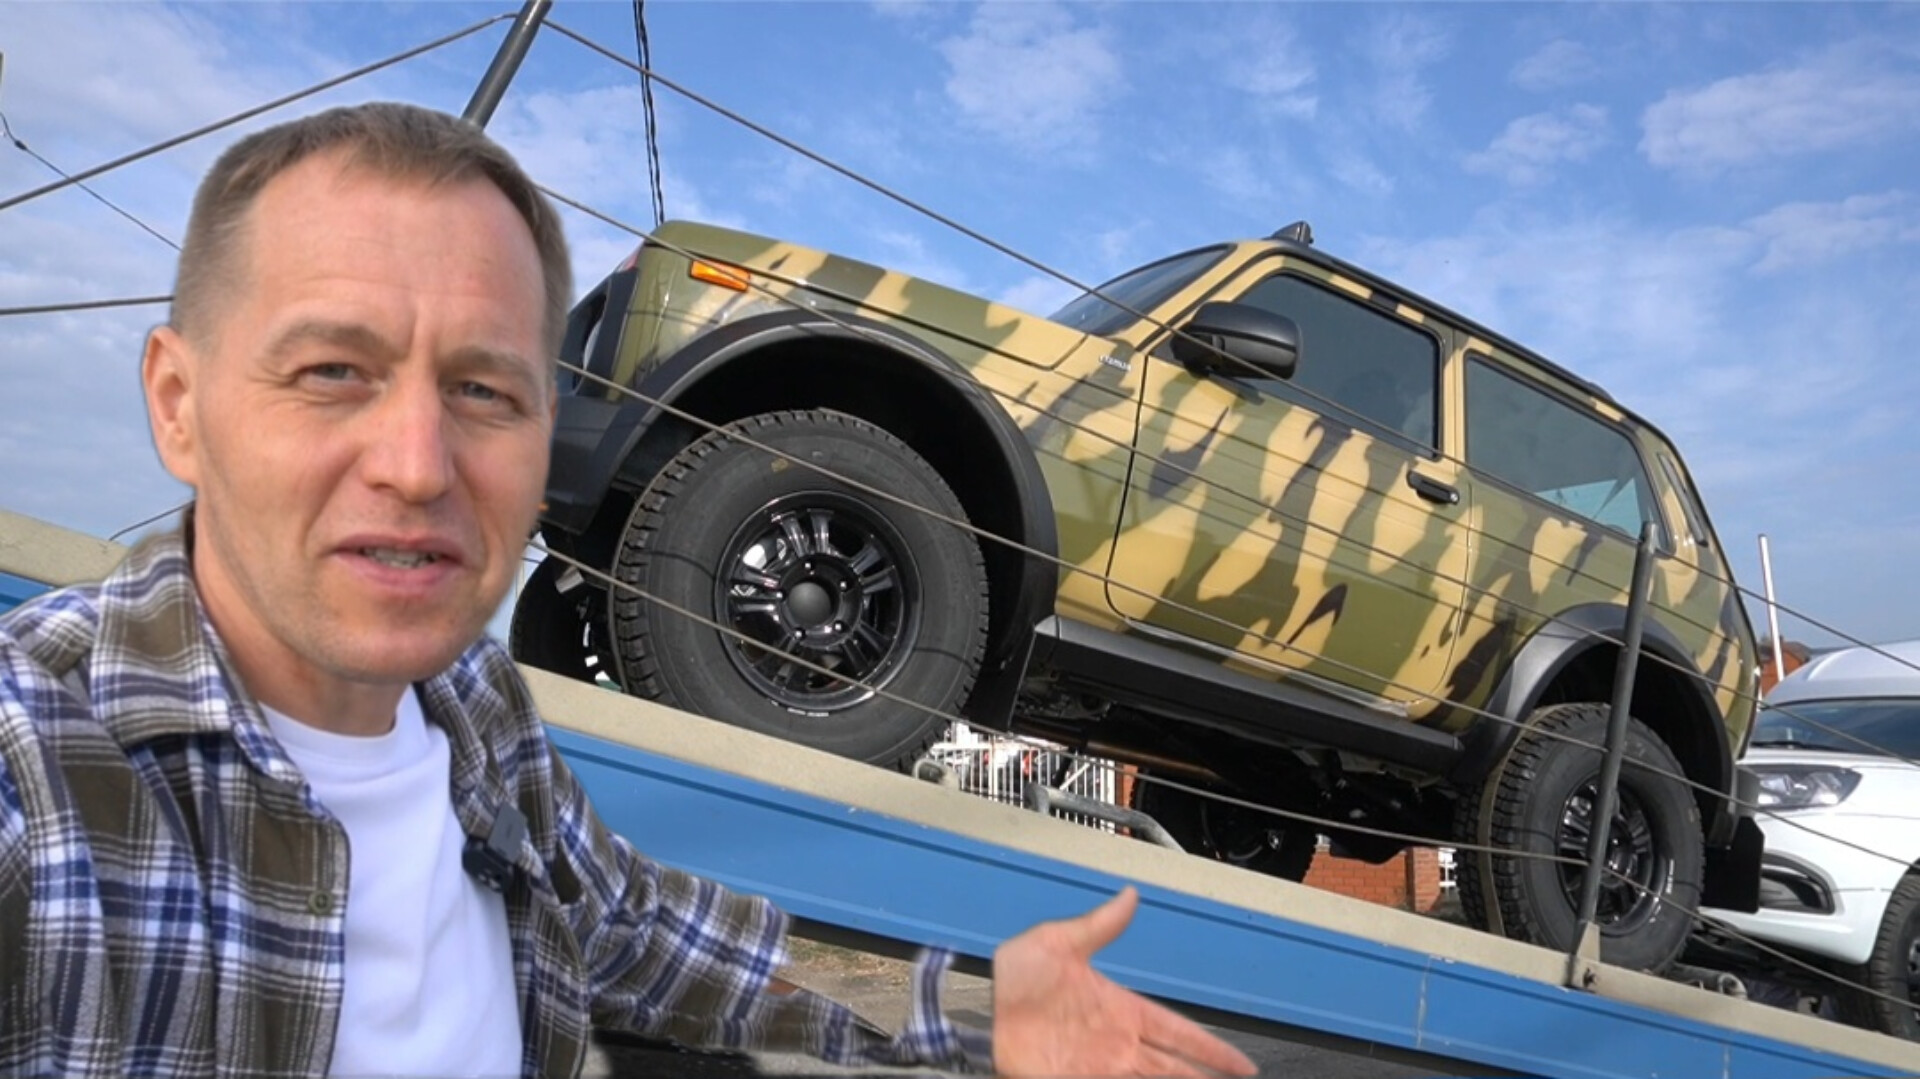 АвтоВАЗ выкатил в продажу Ниву Бронто - это "военный" вариант для гражданских